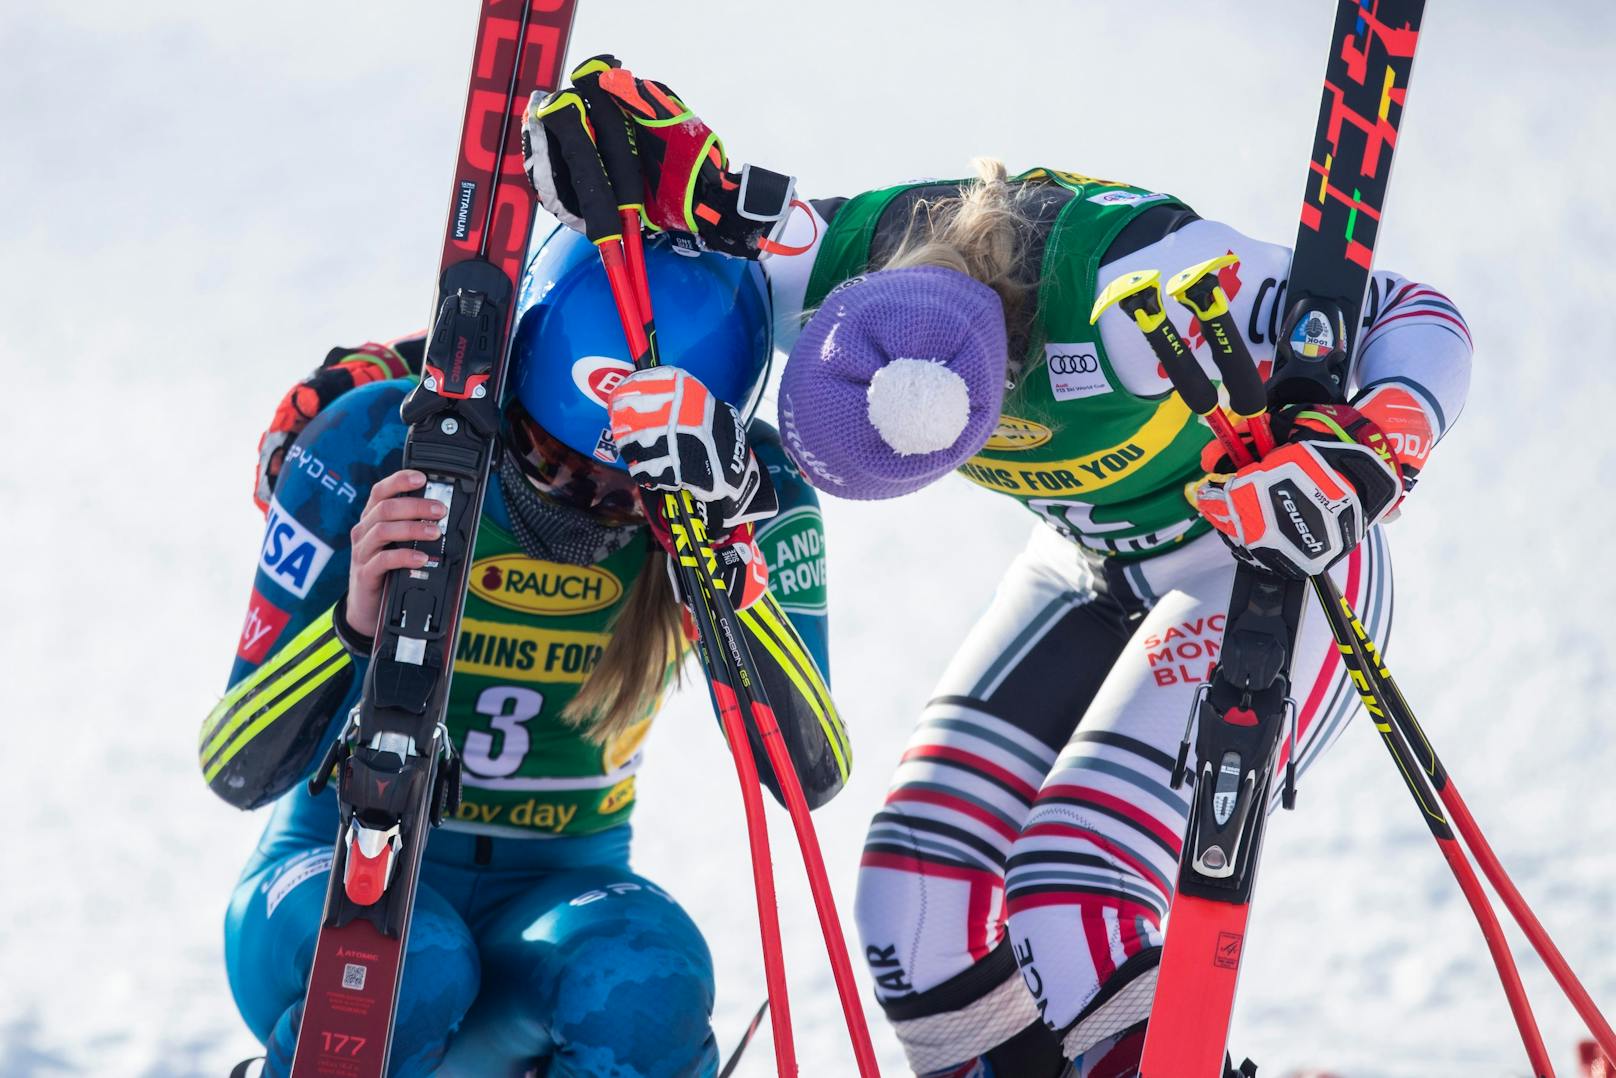 Den Sieg beim zweiten Riesentorlauf sicherte sich Mikaela Shiffrin. Für die Ski-Queen war es der erste Erfolg seit dem tragischen Tod ihres Vaters – entsprechend emotional reagierte sie.